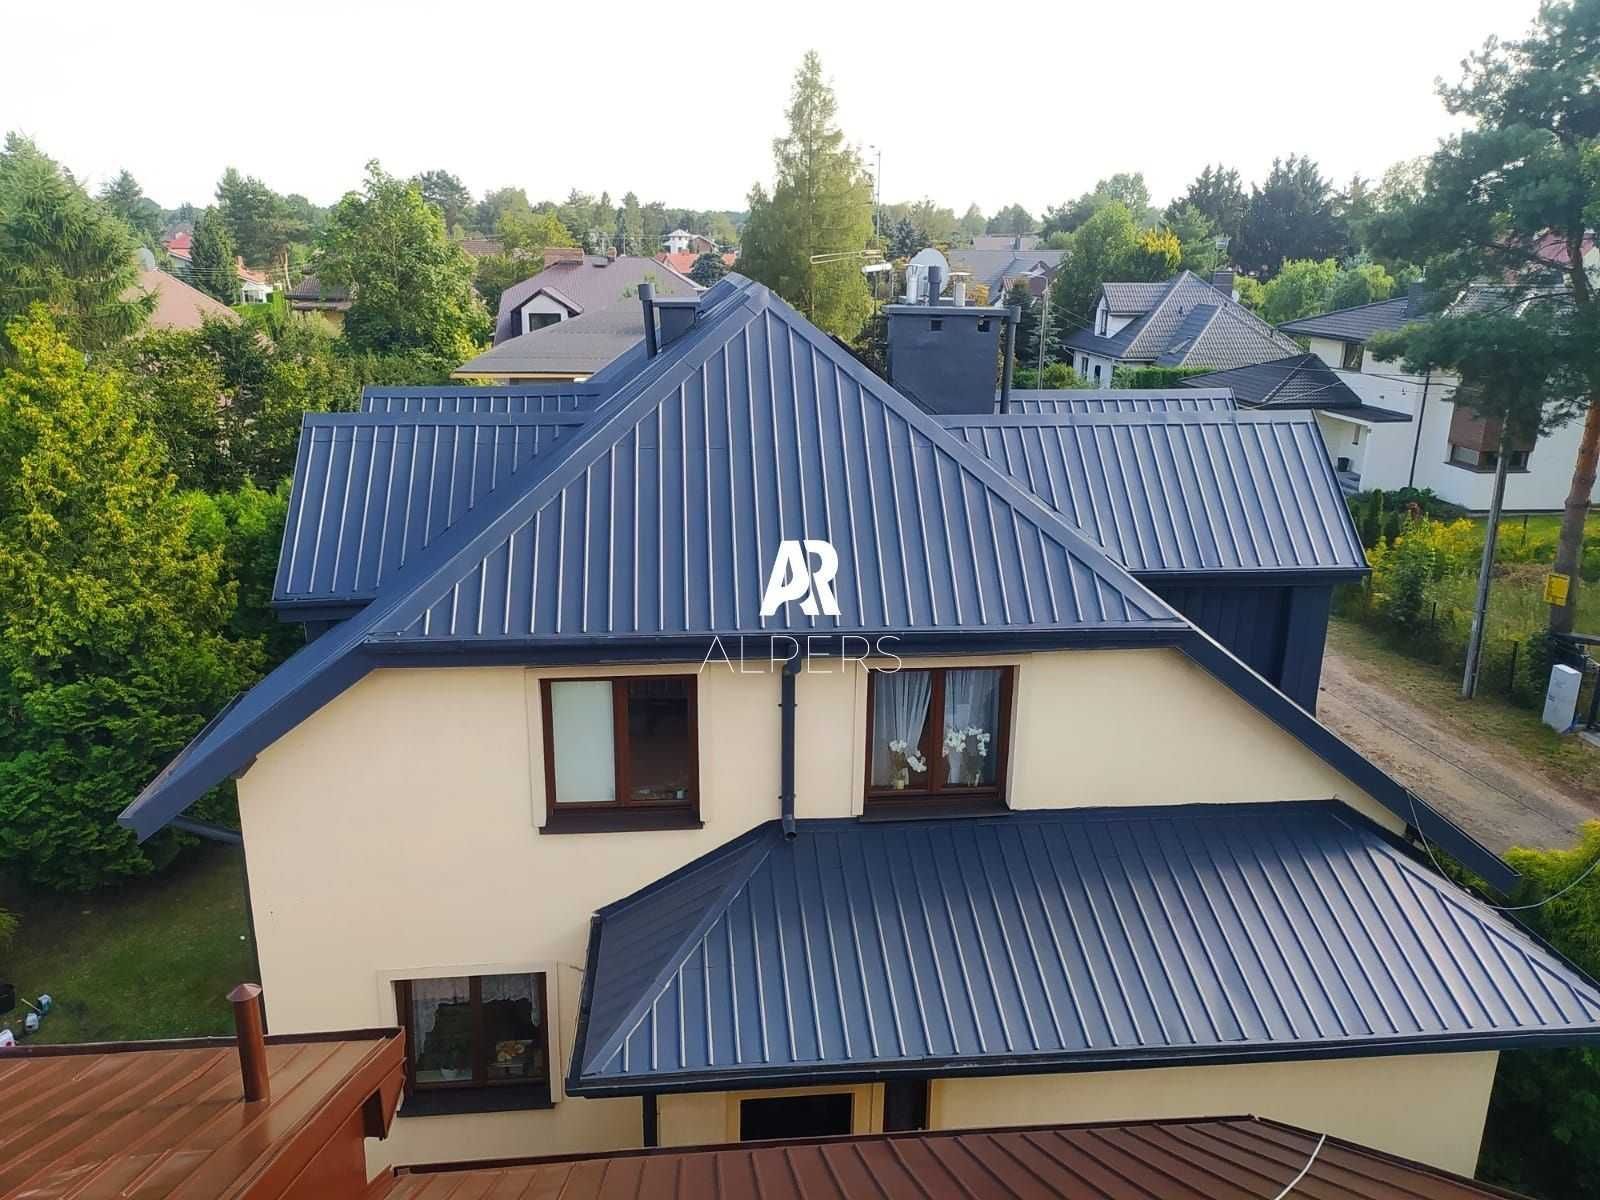 Mycie Malowanie Dachów Elewacji czyszczenie dachówki renowacja blachy